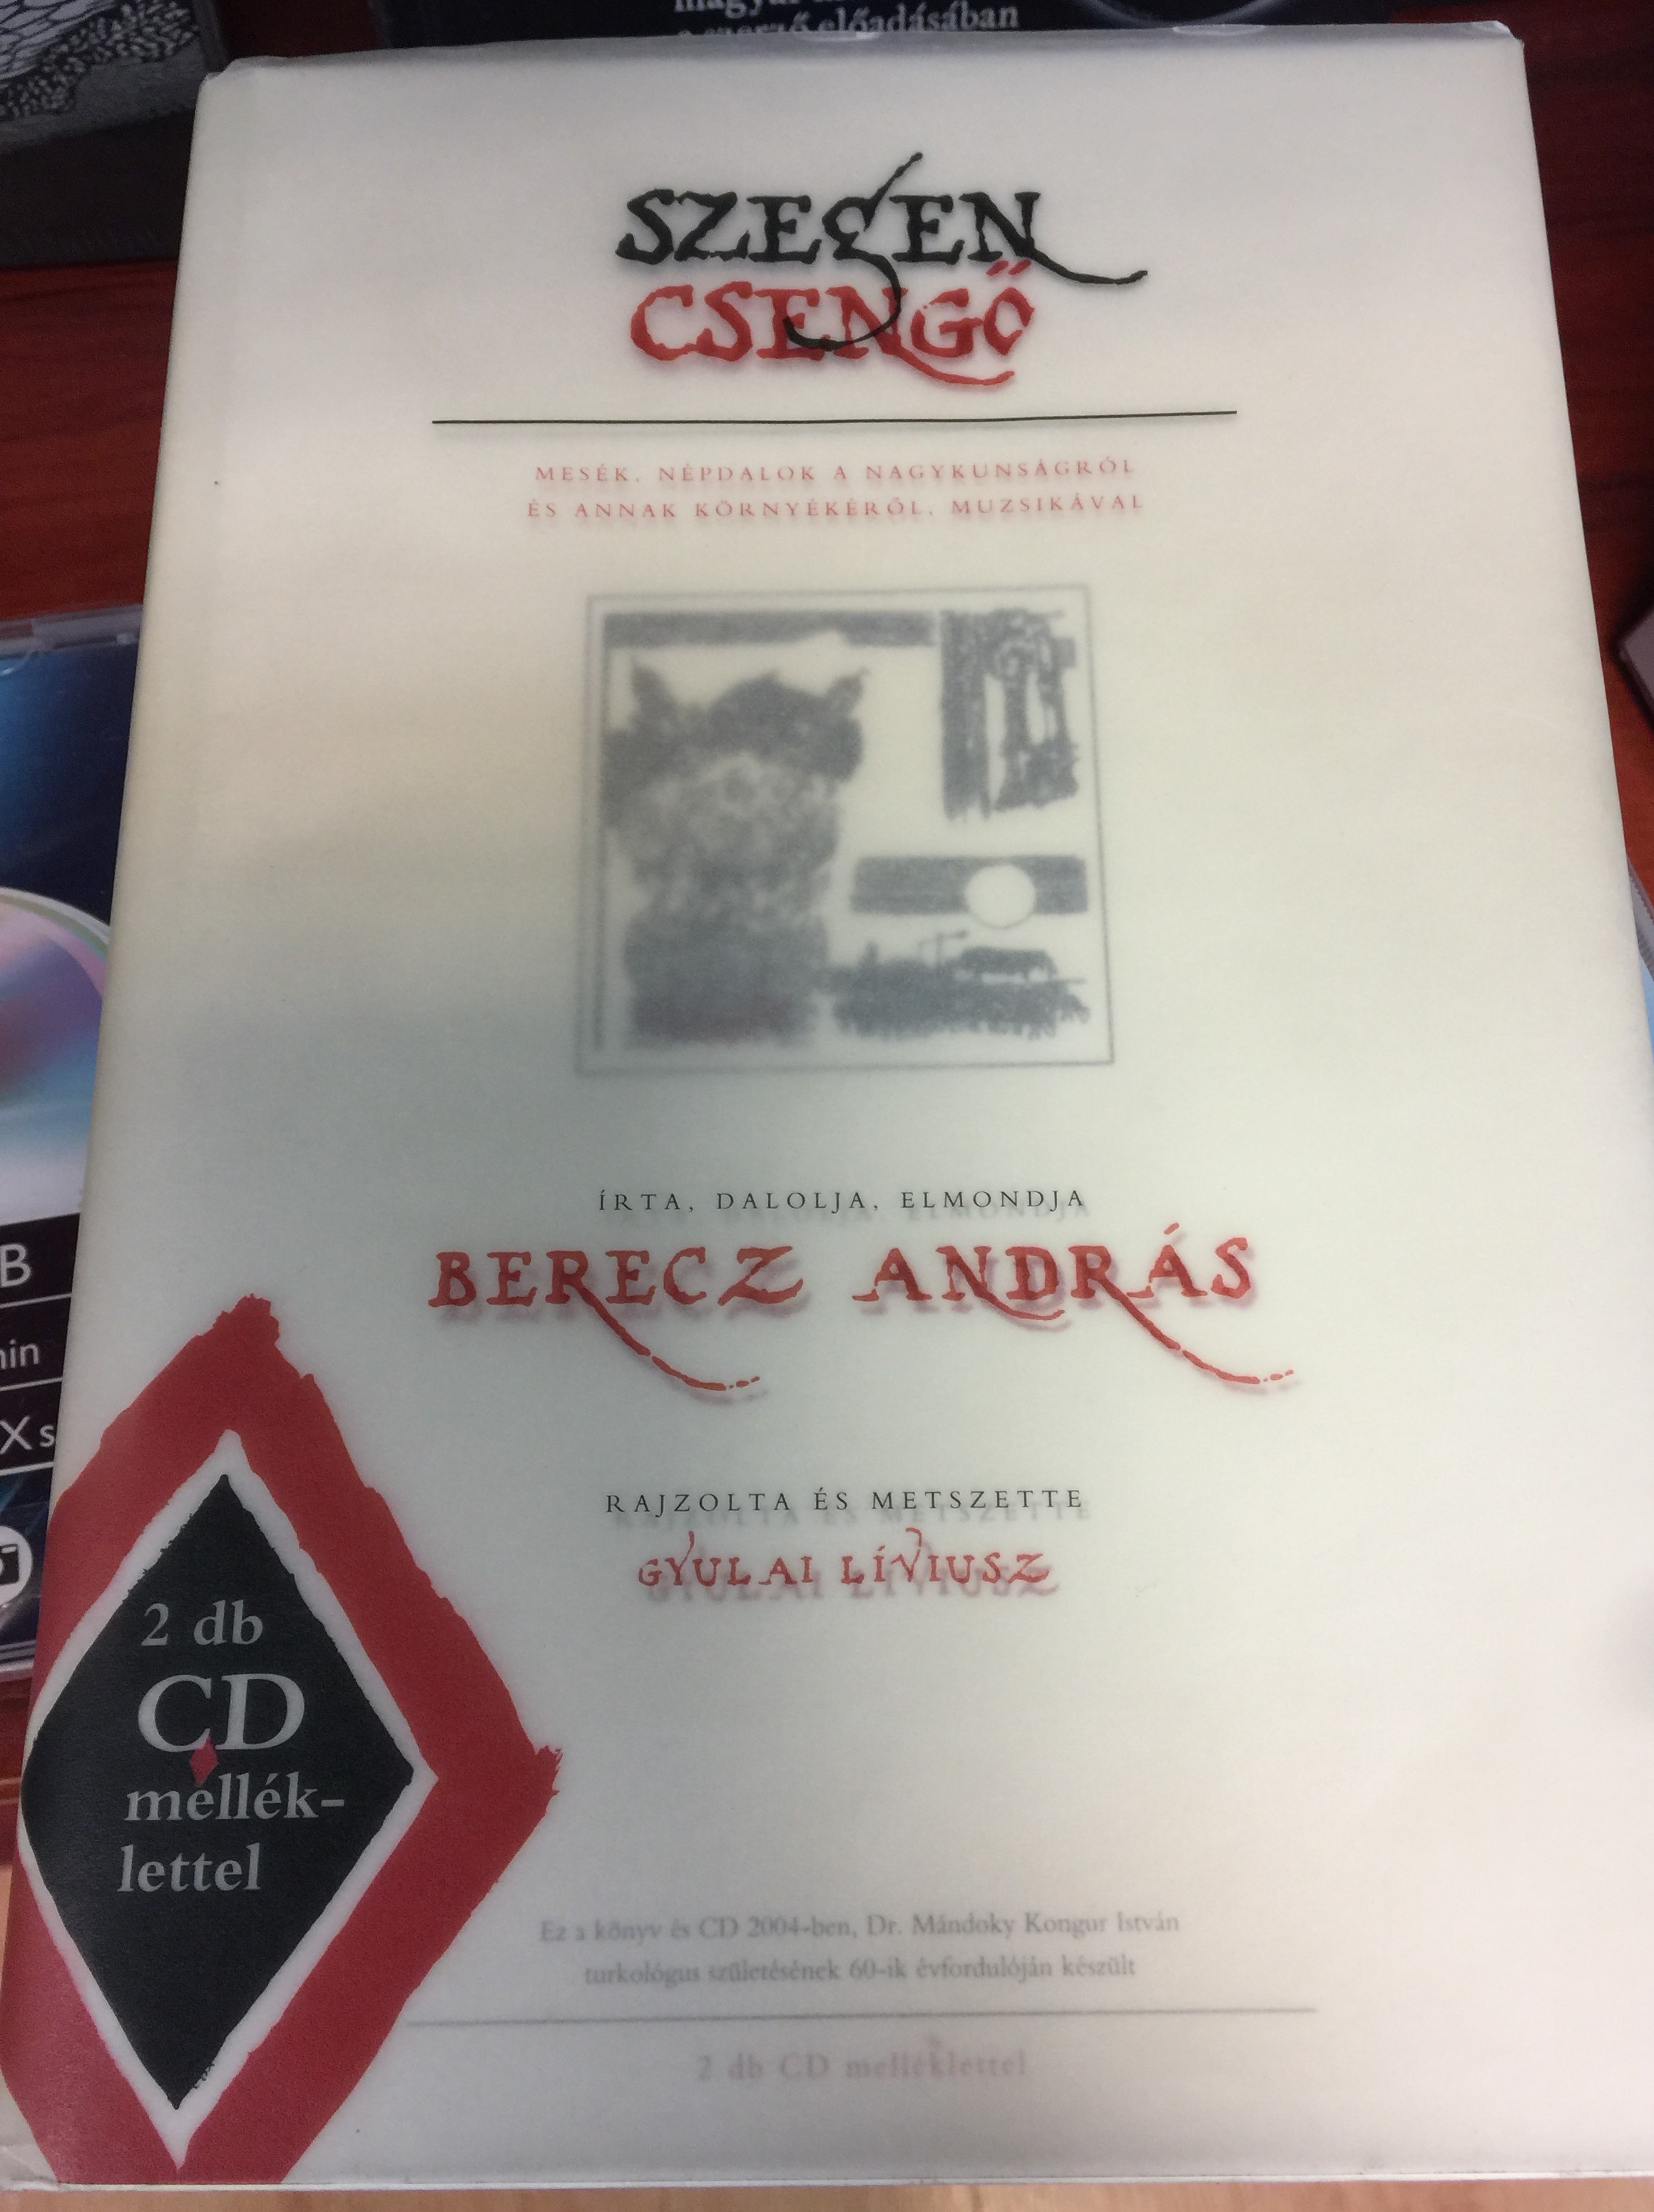 Szegen csengő by Berecz András - Könyv & 2CD 1.JPG